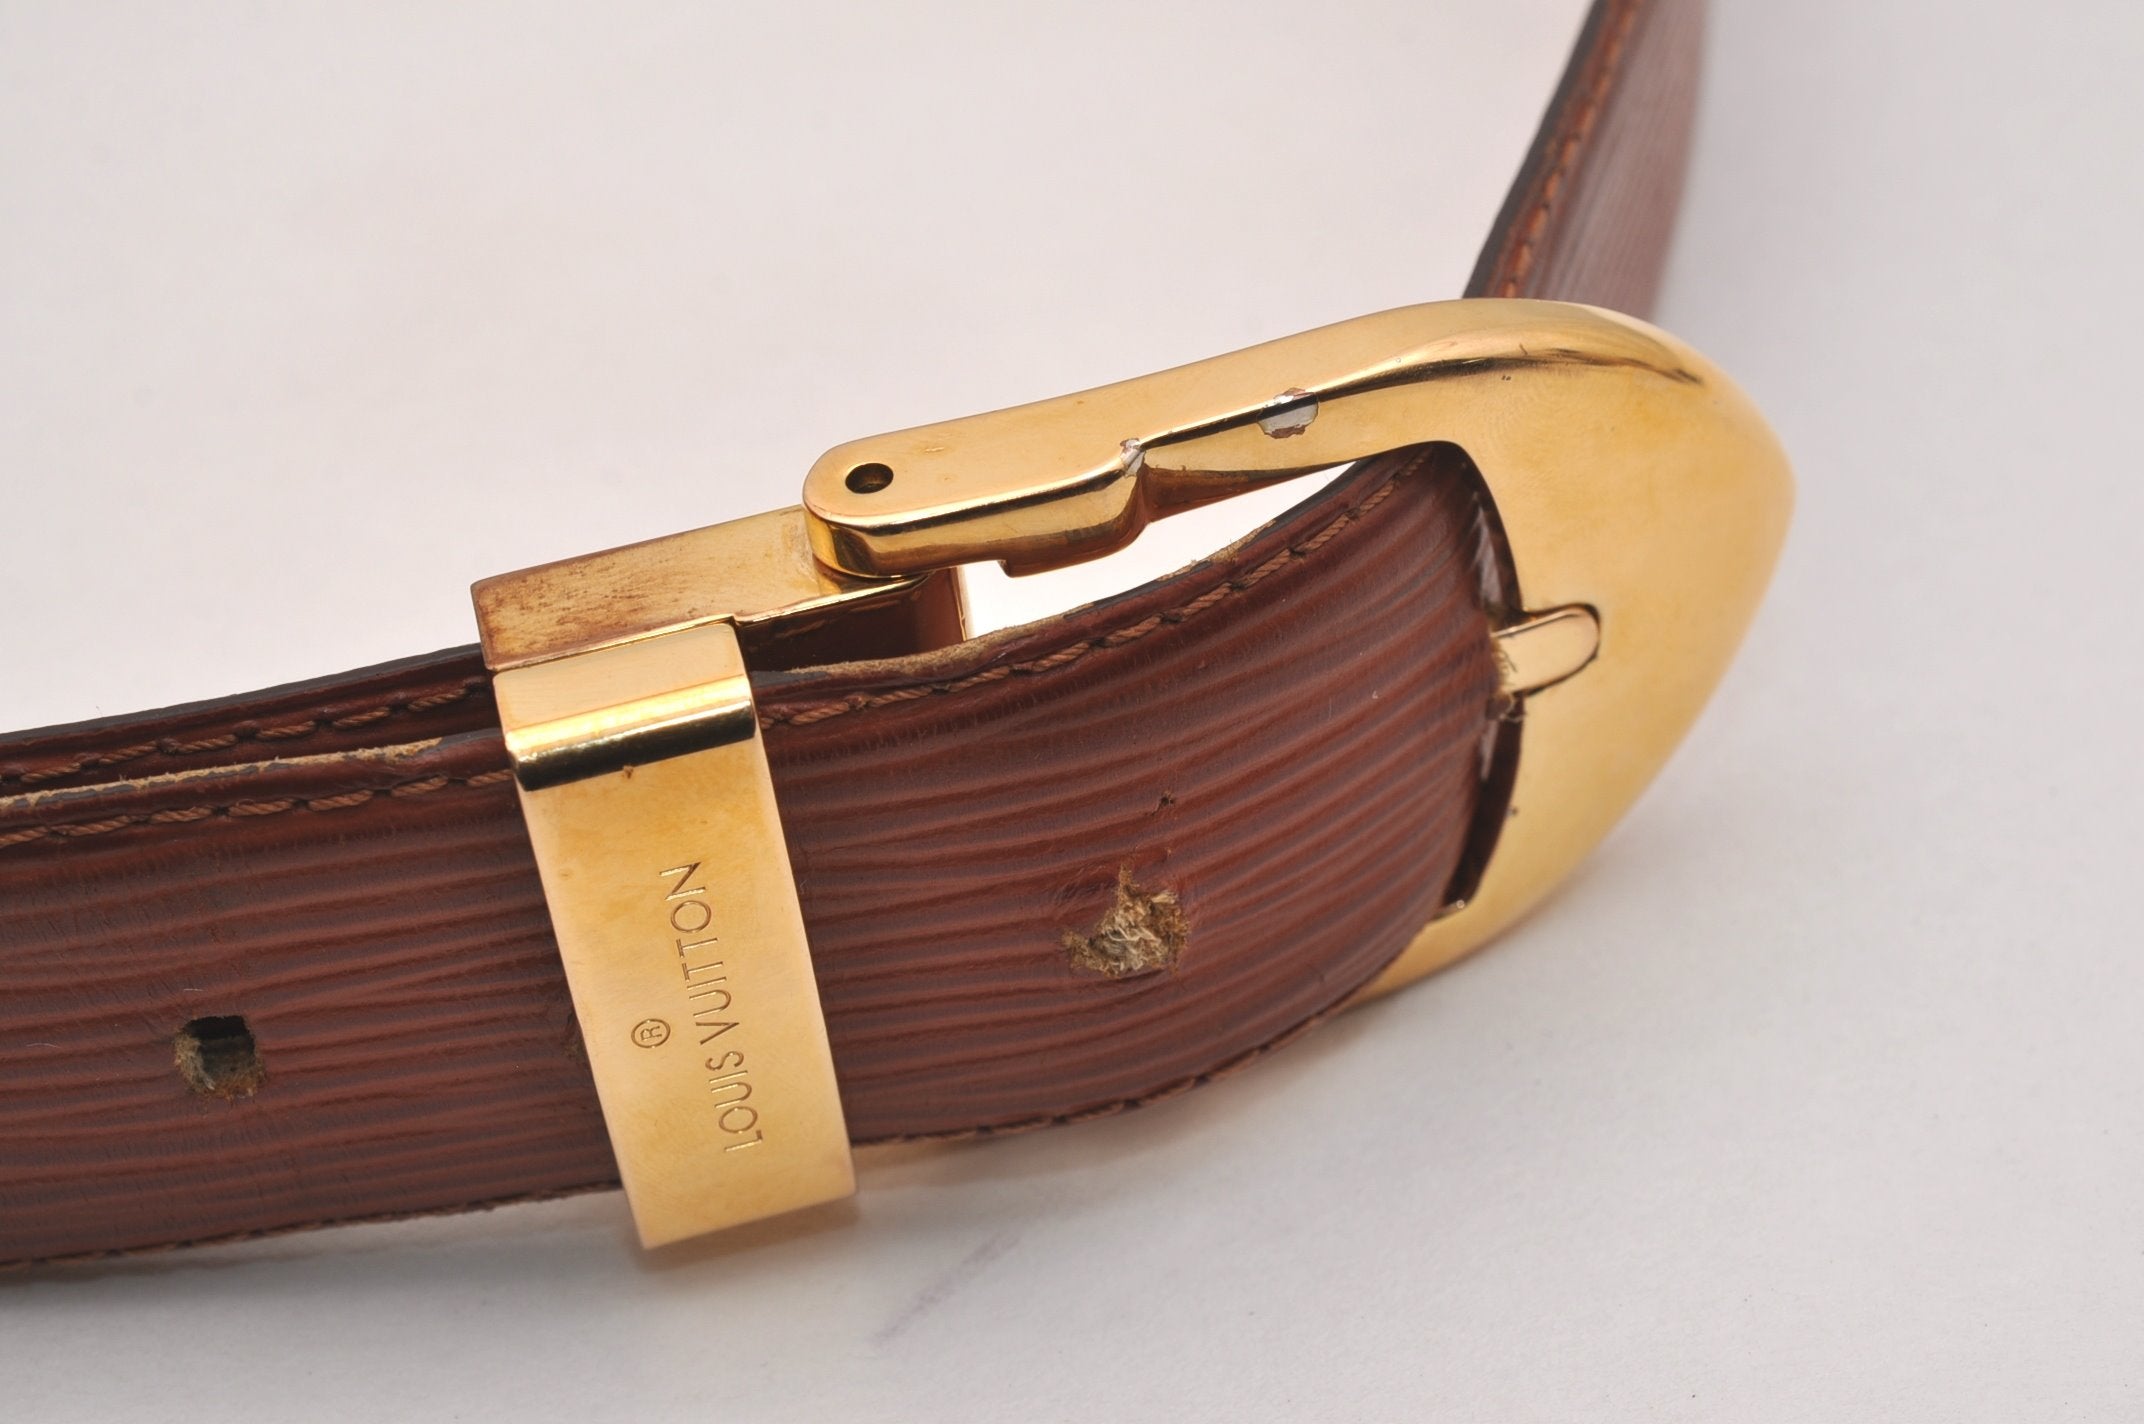 Authentic Louis Vuitton Epi Ceinture Belt 83-93cm 32.7-36.6